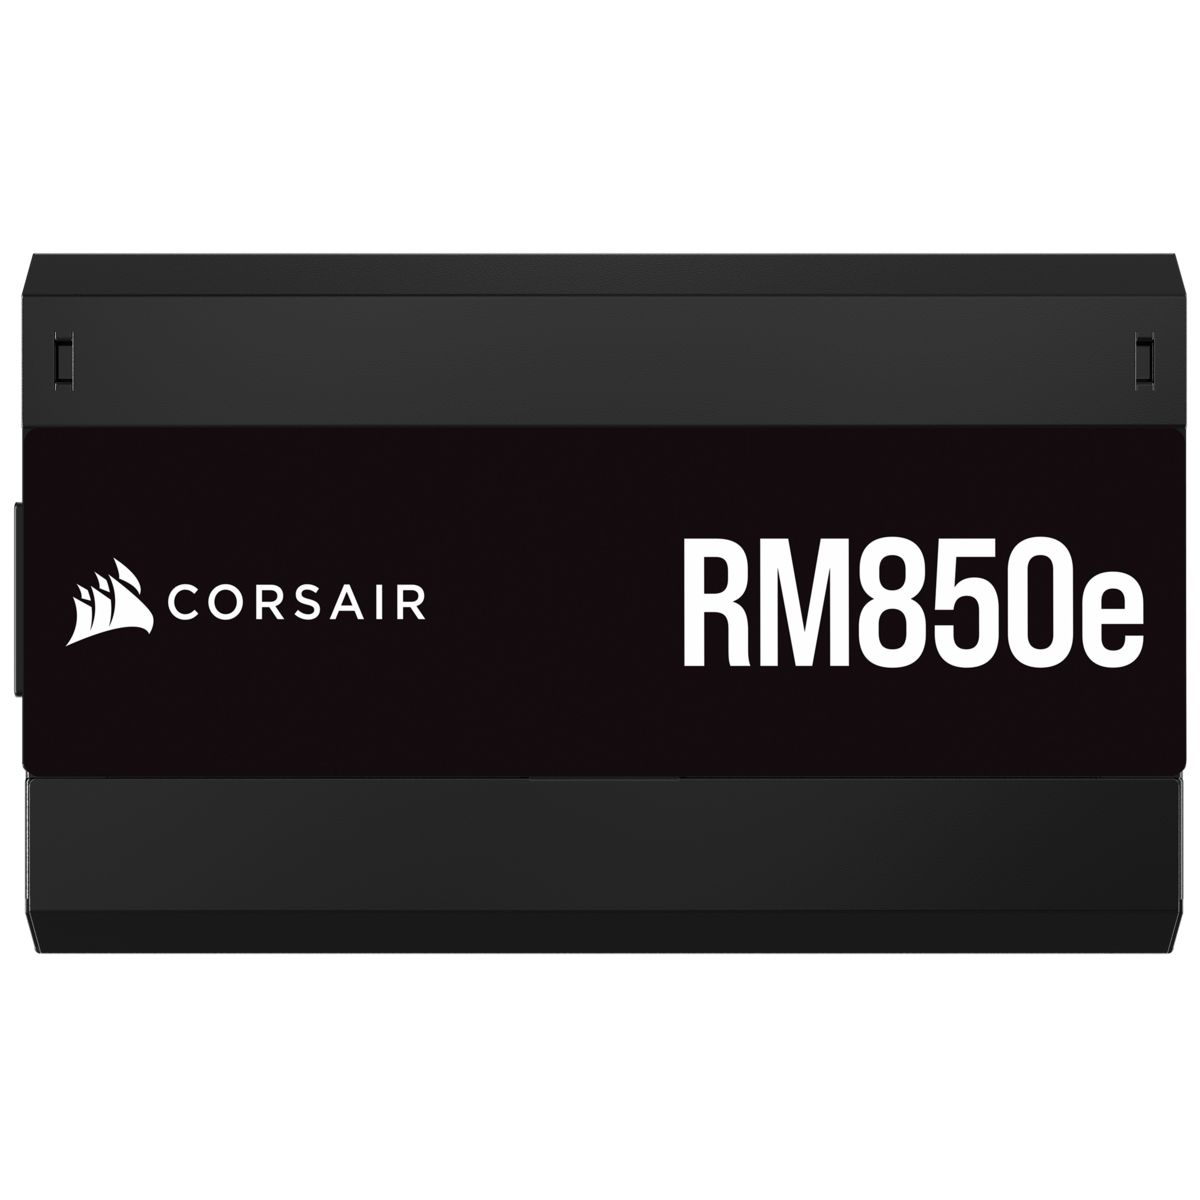 Corsair - Fuente Alimentación Modular Corsair RMx Series RM850e 850W 80 Plus Gold ATX3.0